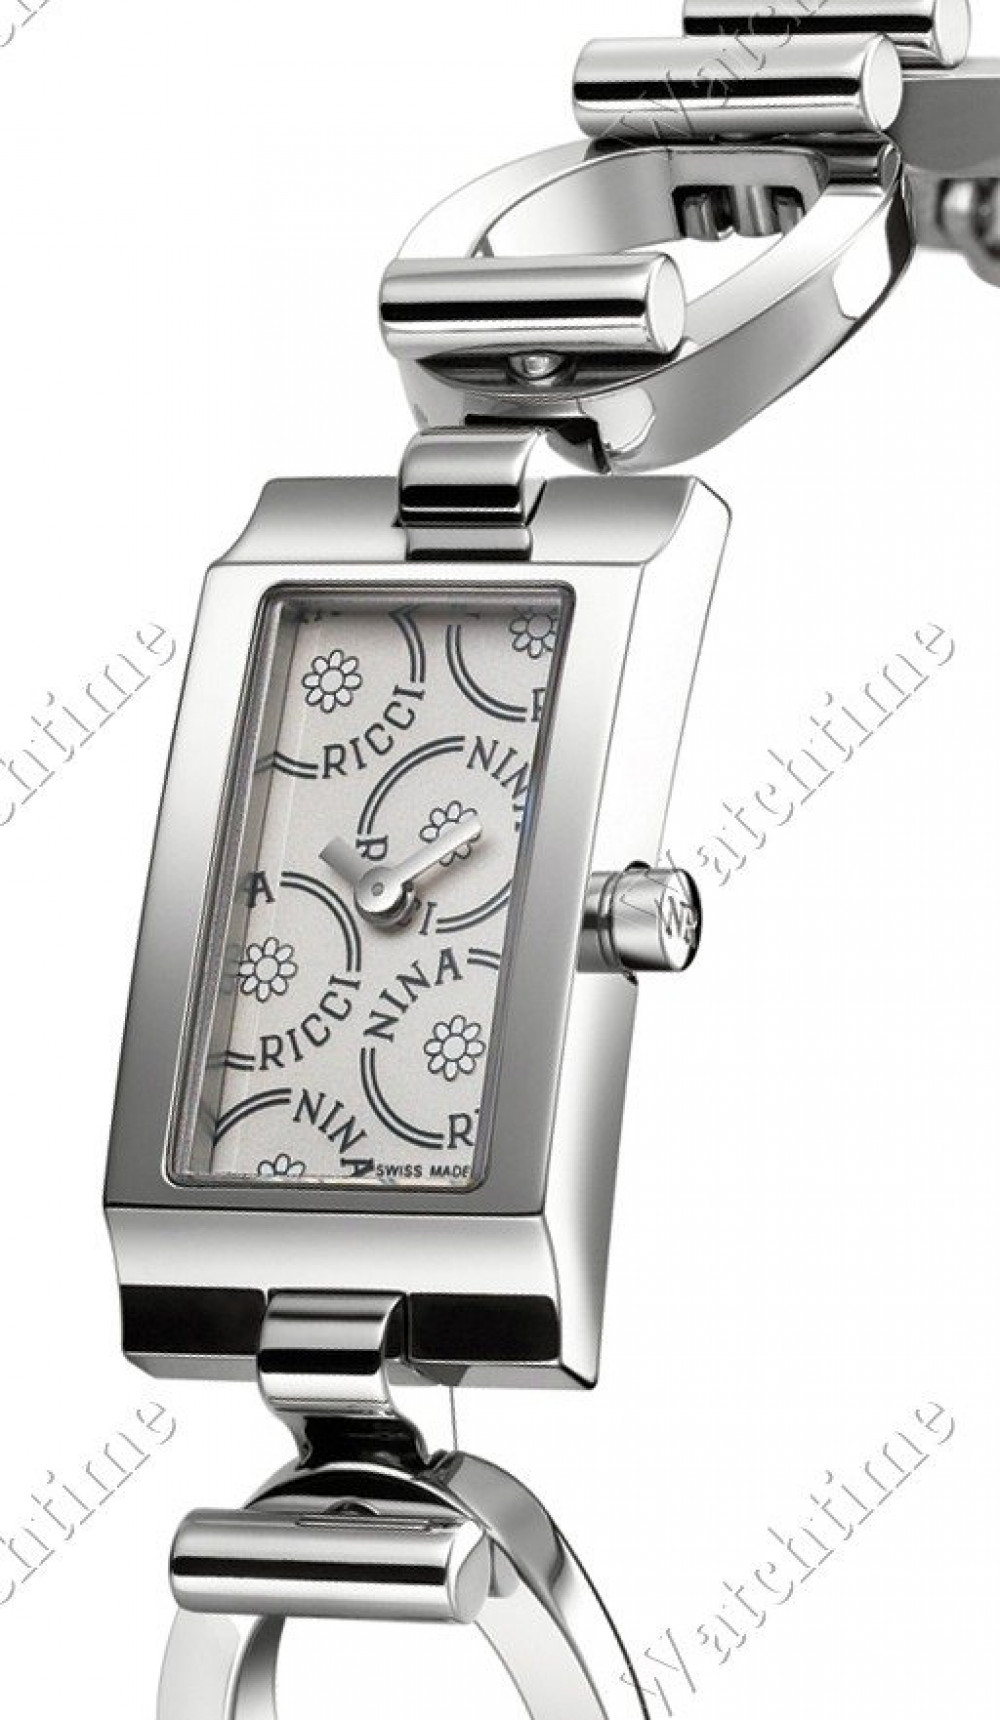 Zegarek firmy Nina Ricci, model Lady Quarz